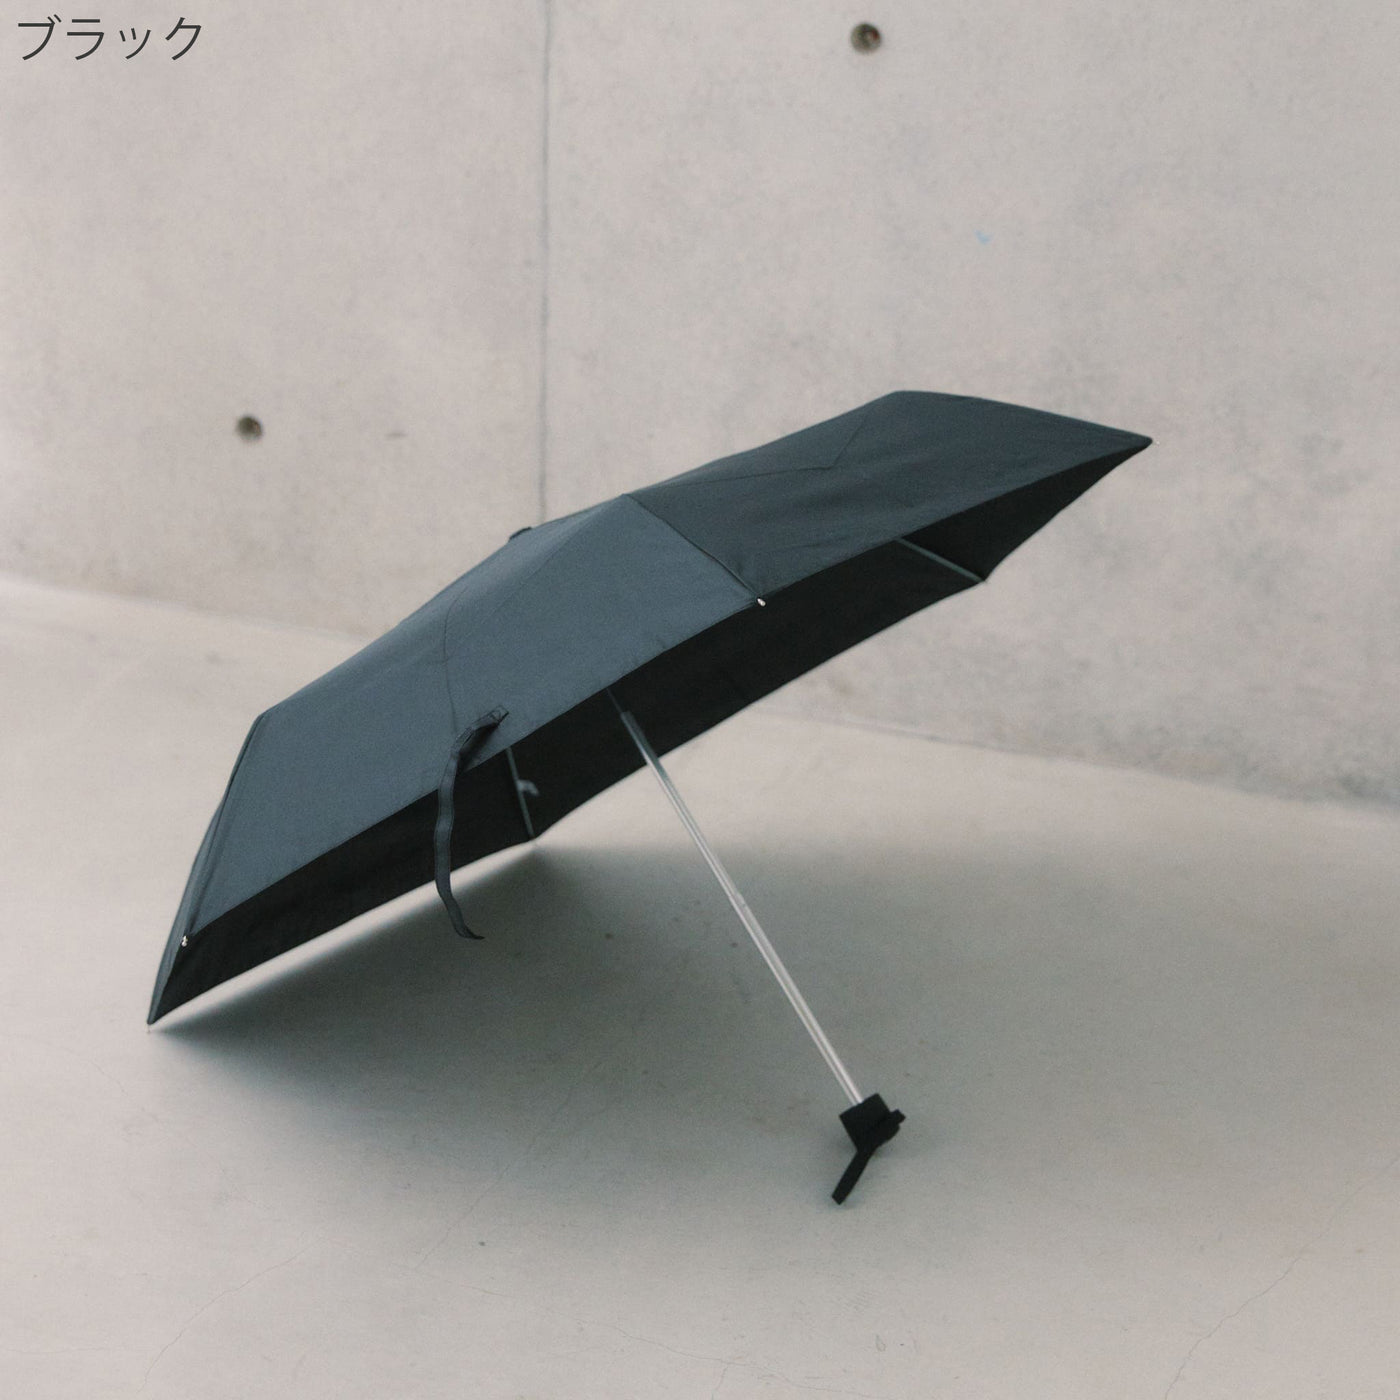 どんな場所でもどんな天気でも安心して使える傘